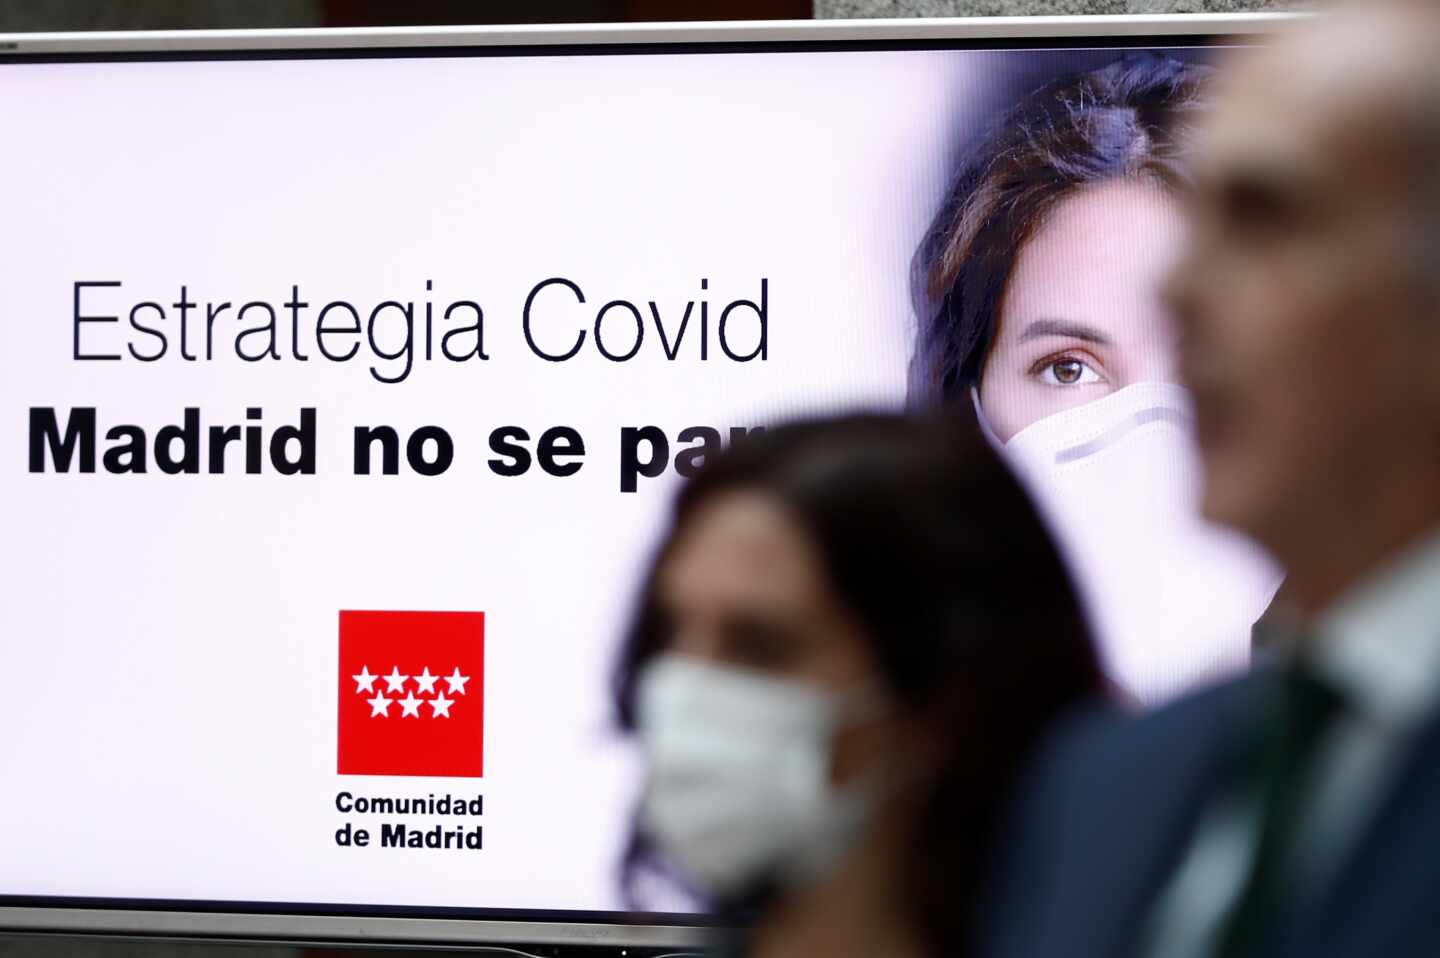 La Comunidad de Madrid notifica tres nuevos brotes, con 15 positivos y 62 contactos